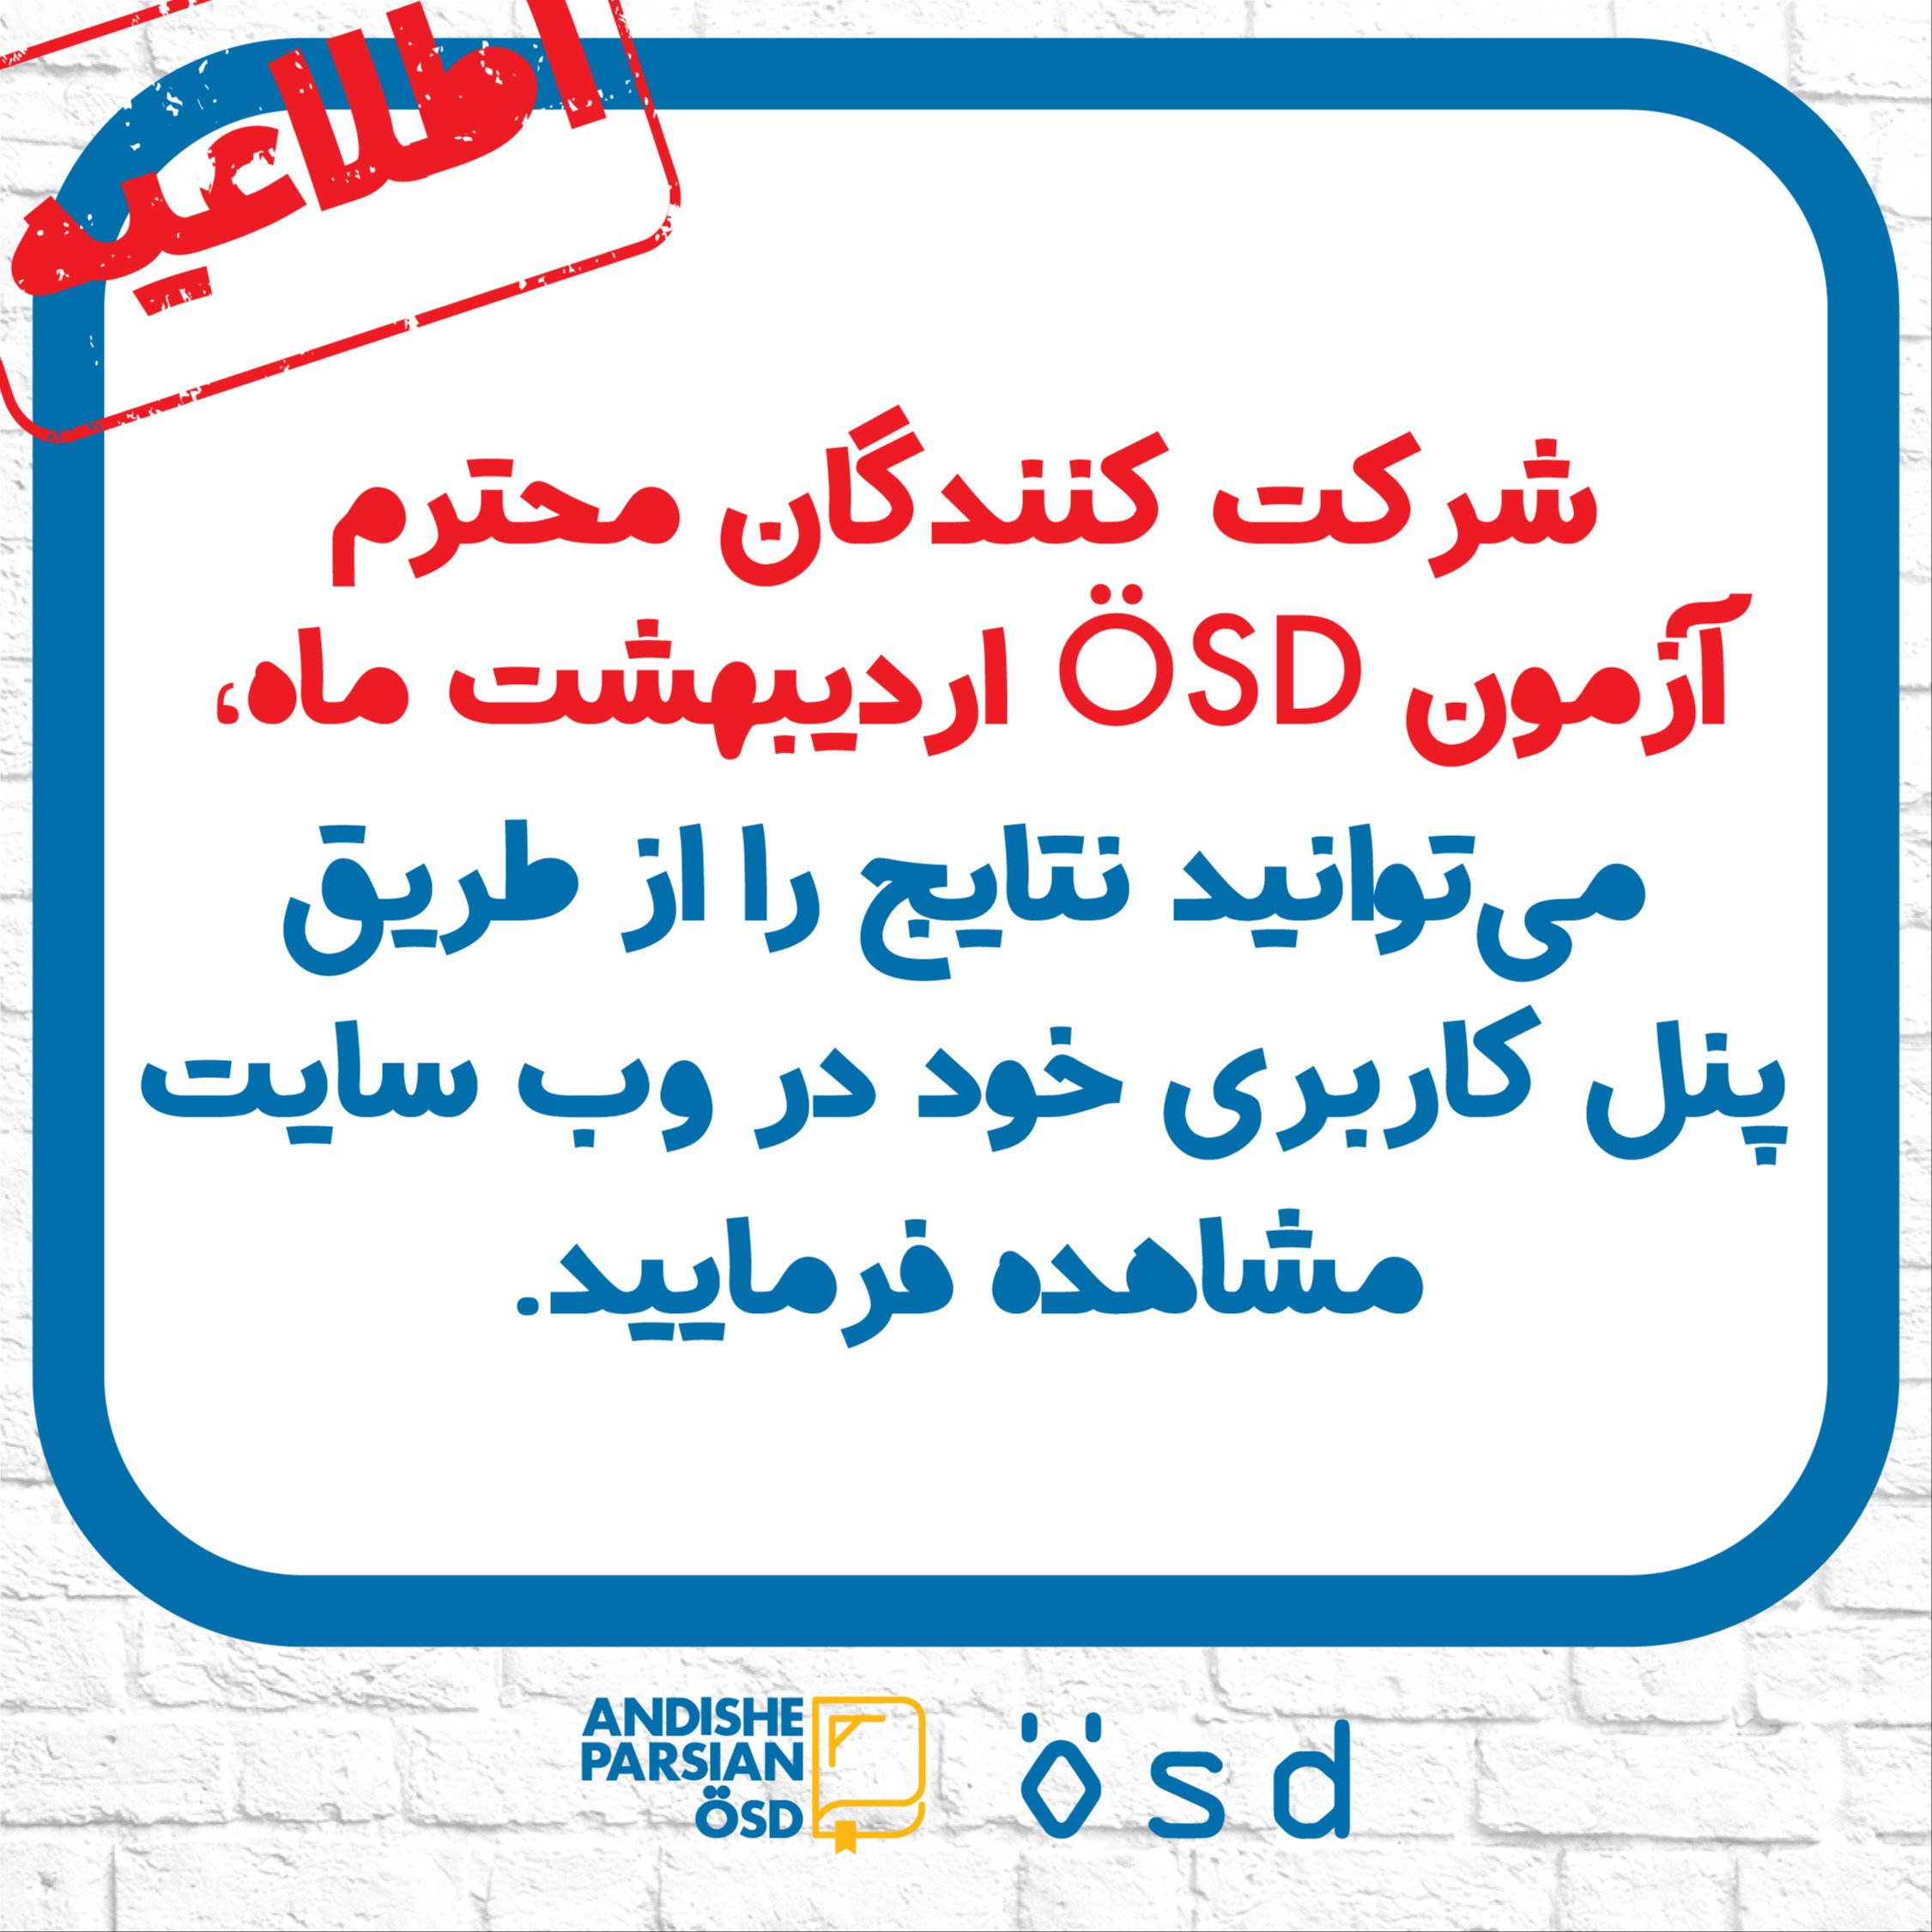 اعلام نتایج آزمون ÖSD  اردیبهشت ماه